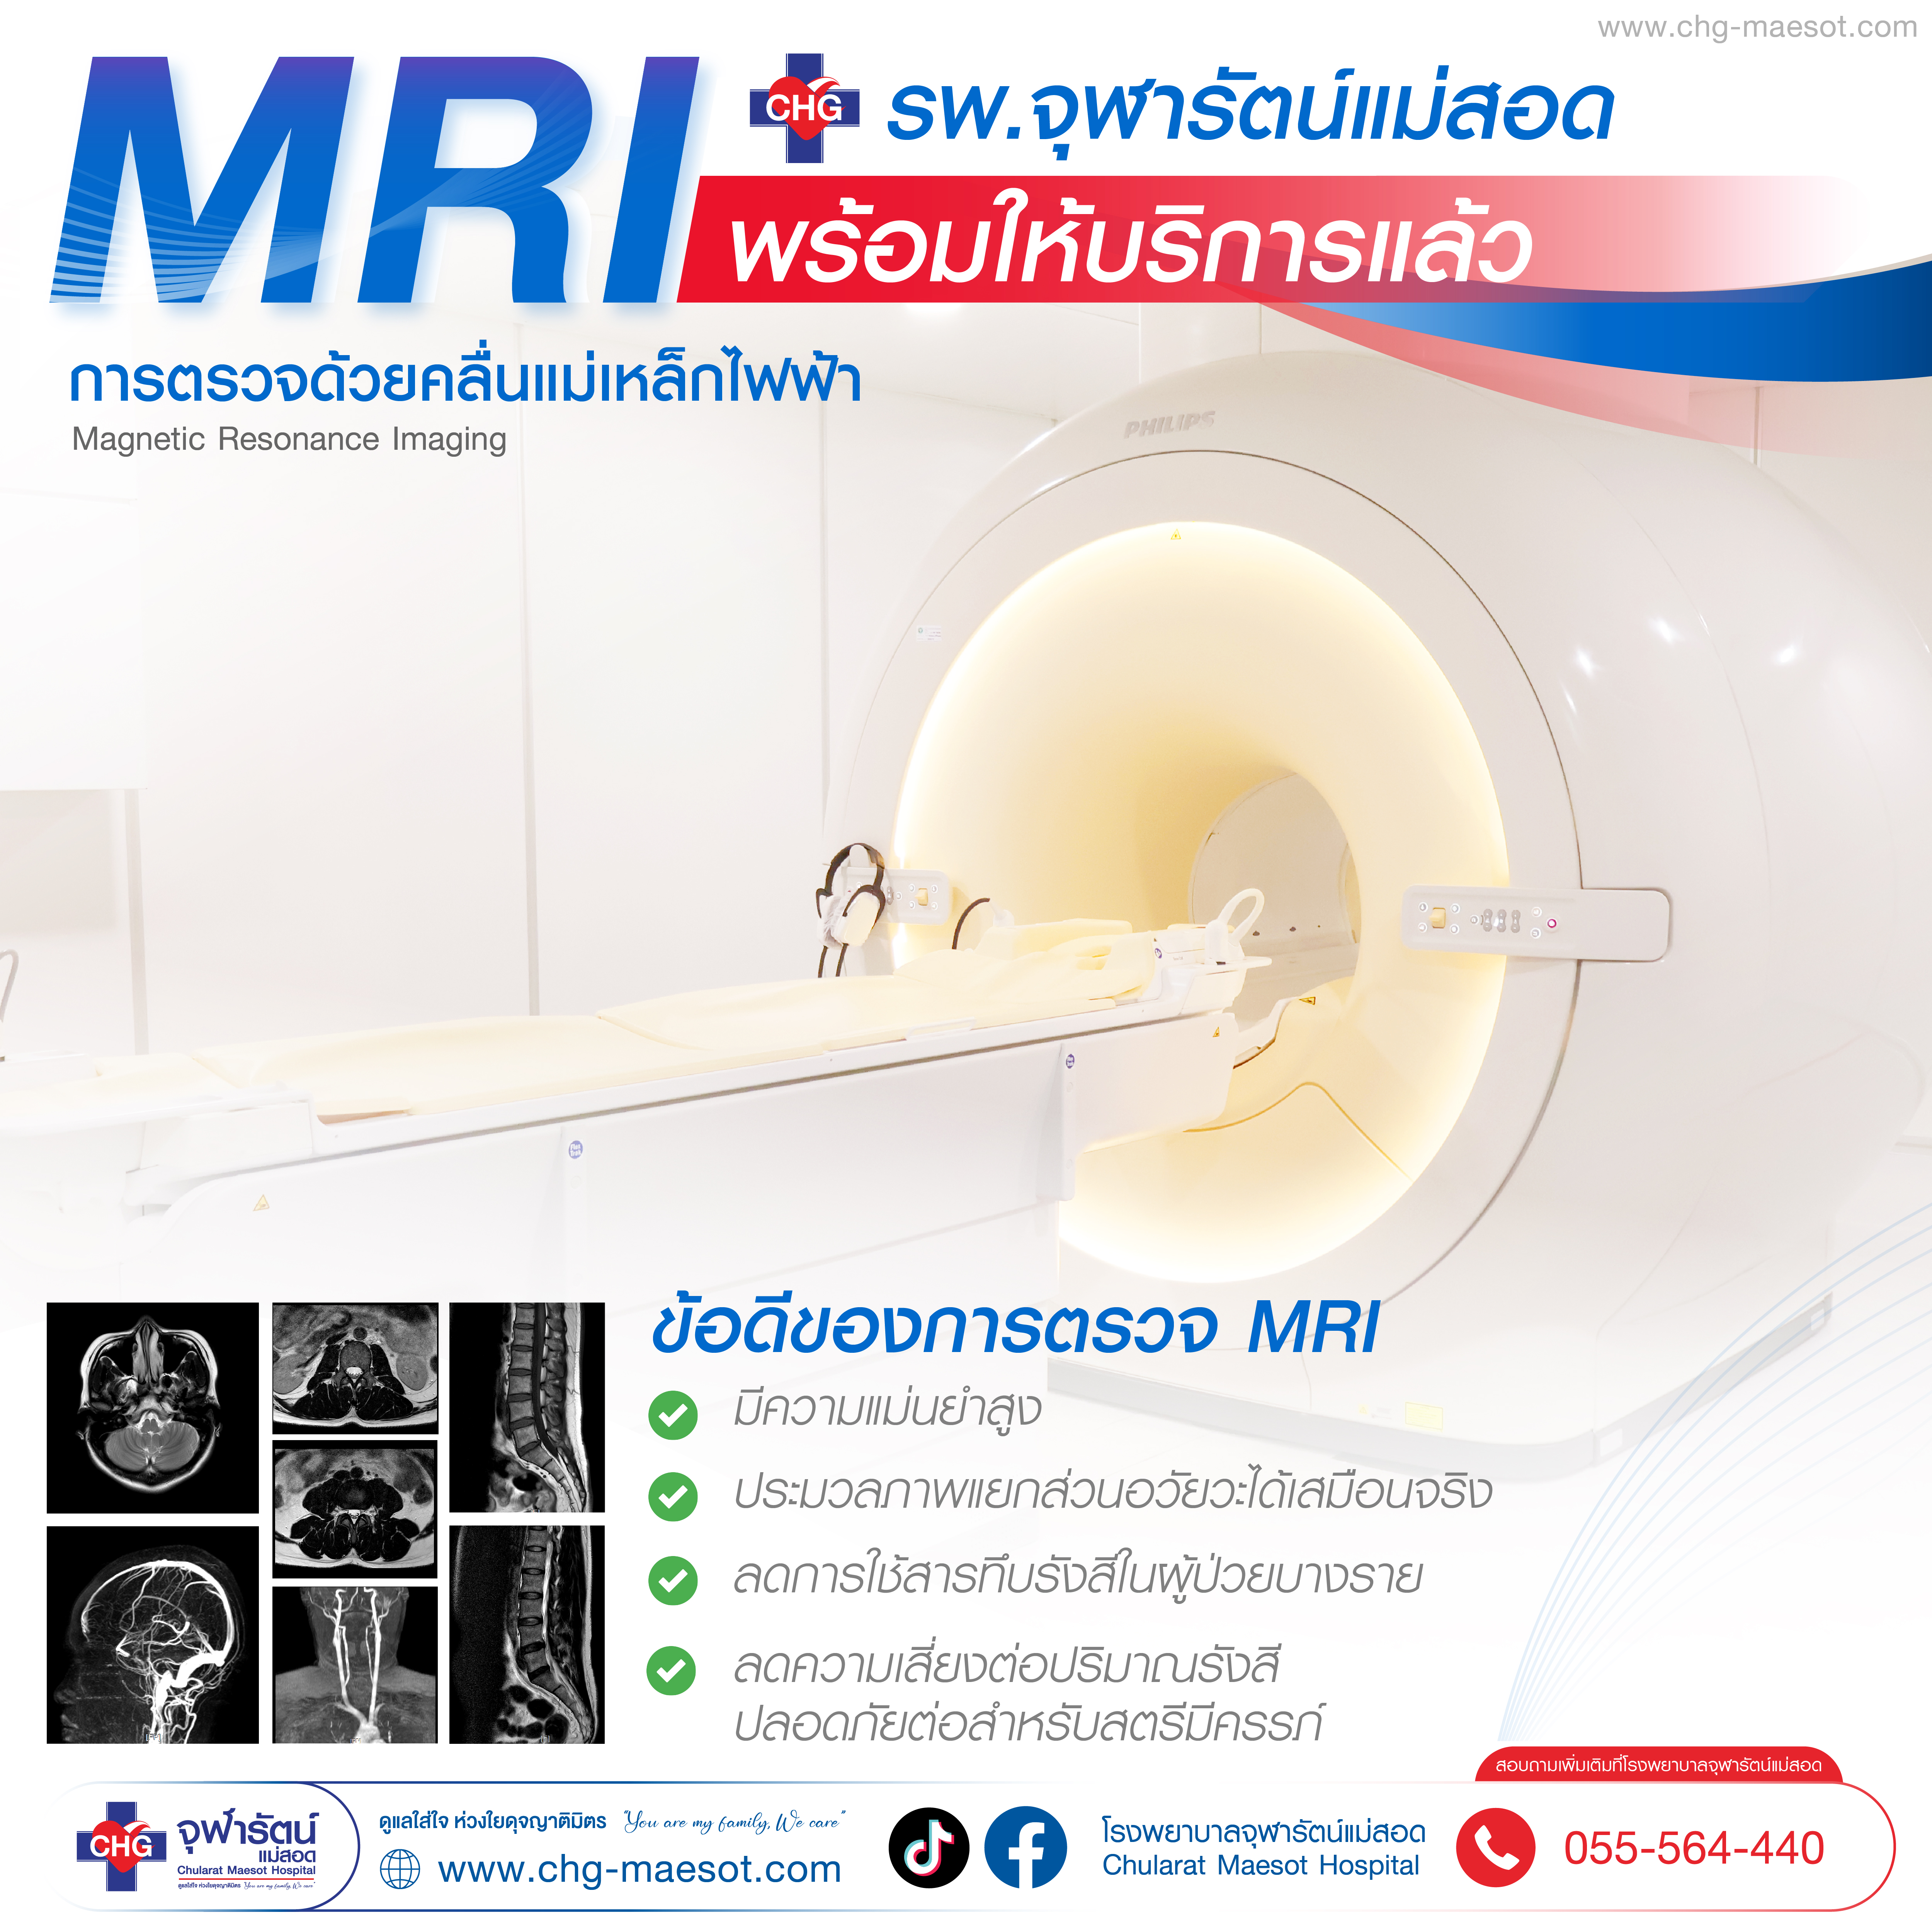 ศูนย์ เอ็ม อาร์ ไอ (MRI) โรงพยาบาลจุฬารัตน์แม่สอด - Chularat Maesot Hosptial